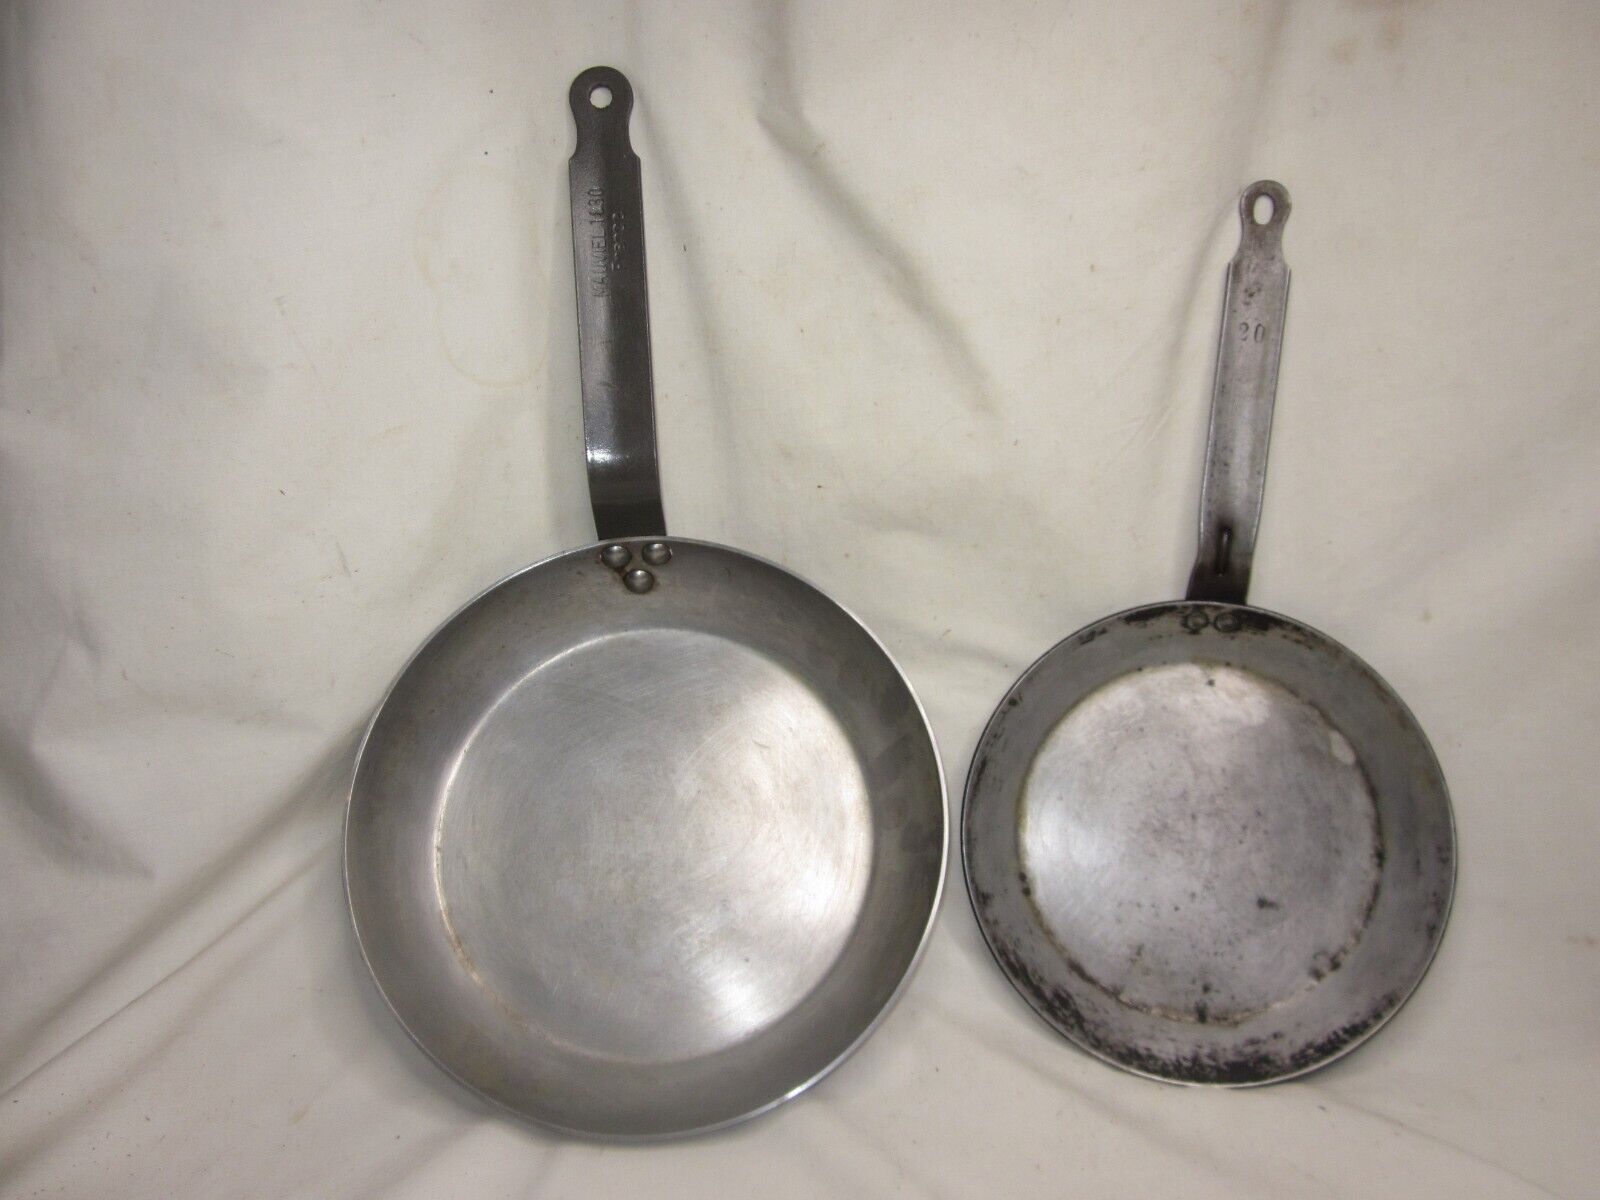 2 vintage pans skillet pan 1 marked MAUVIEL 1830 France & 20 frying skillets